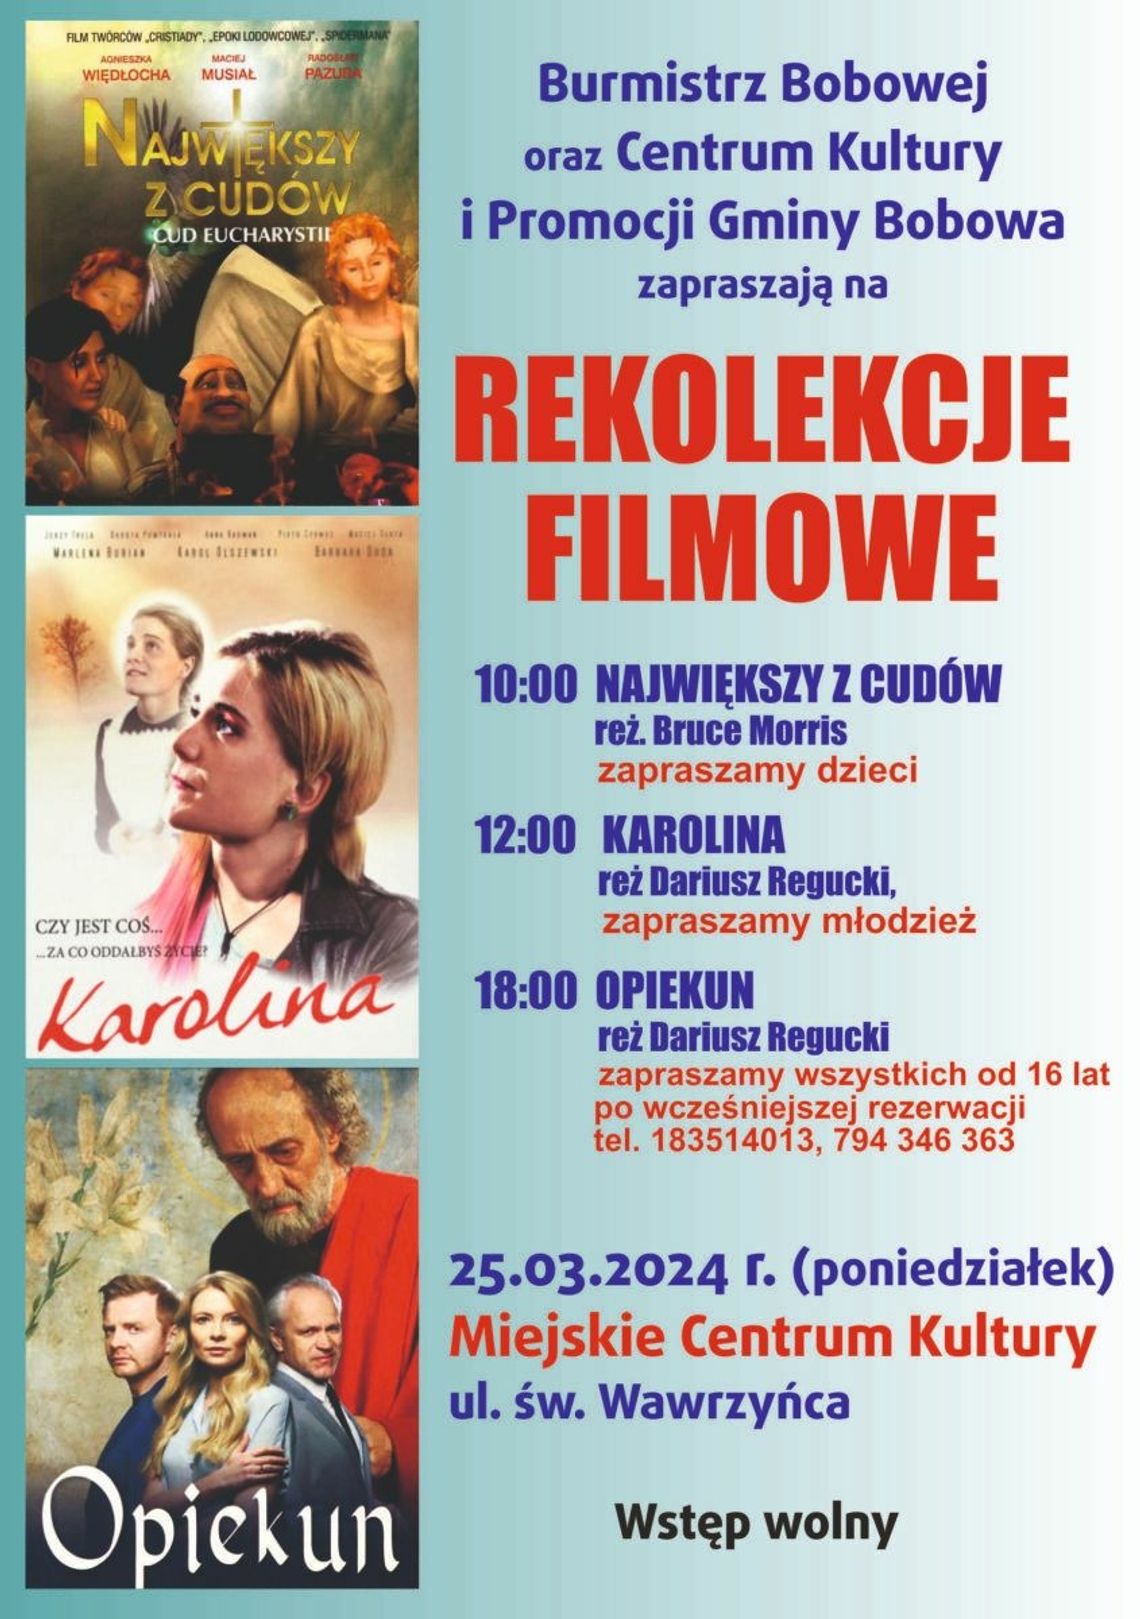 Rekolekcje filmowe w Bobowej | halogorlice.info